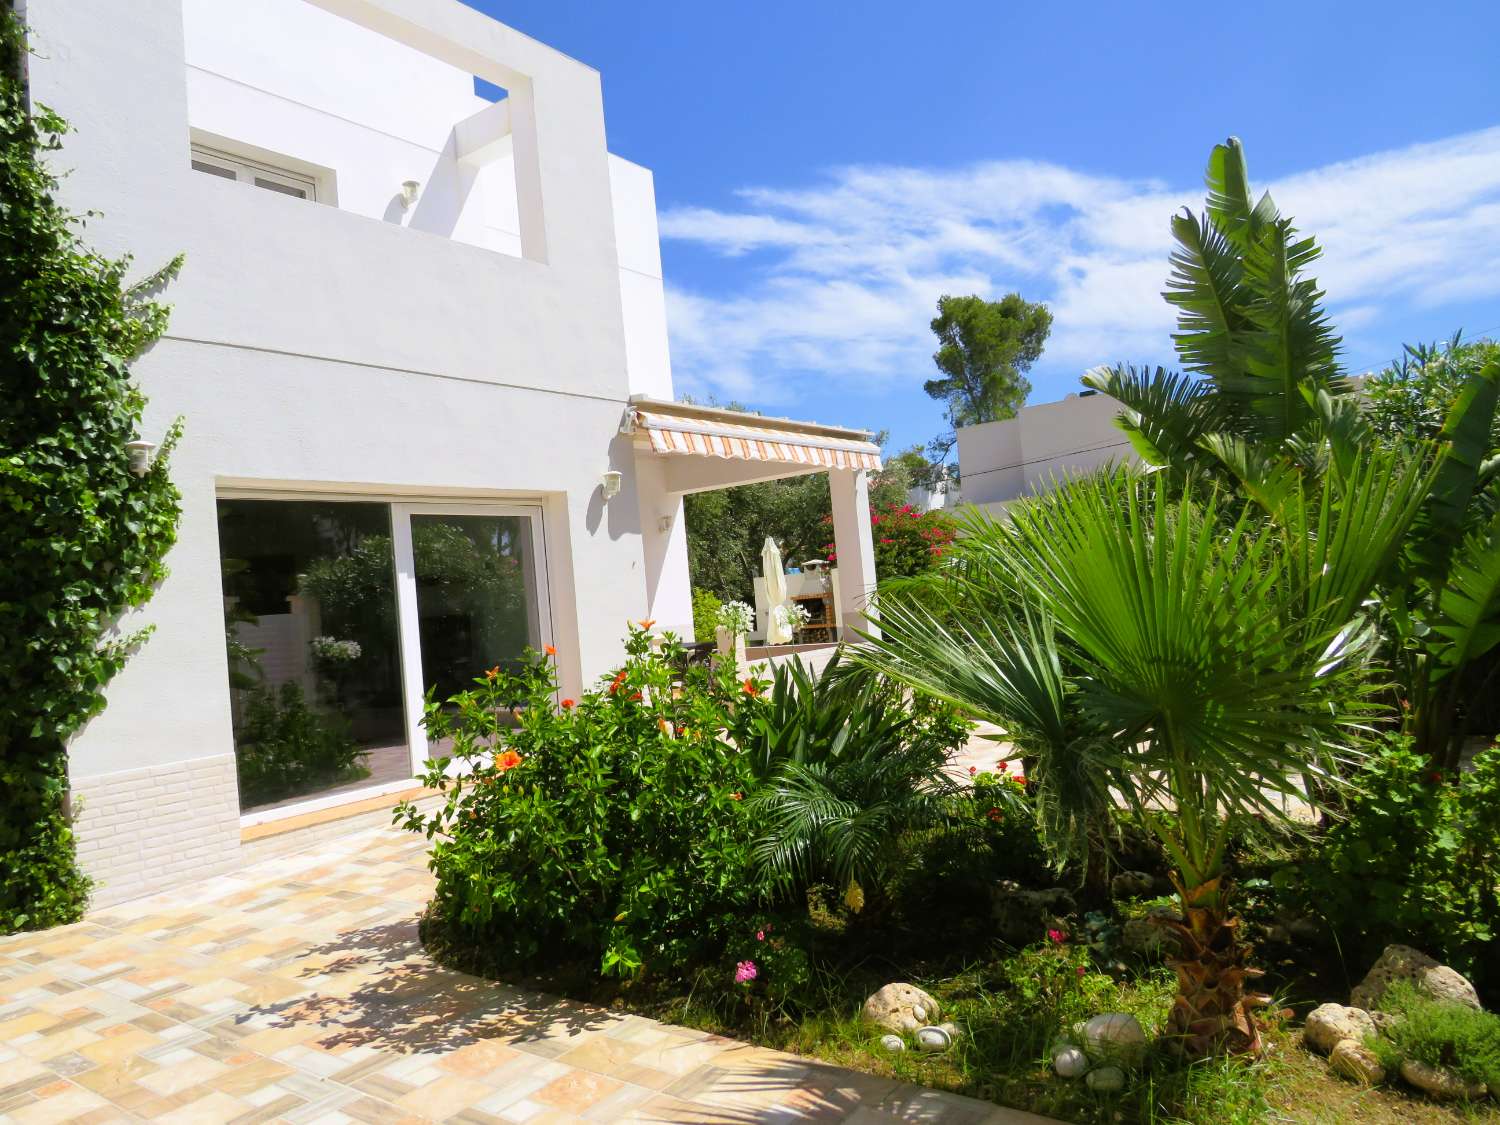 Casa moderna a prop de la platja a la bonica urbanització de Les Tres Cales amb piscina privada i barbacoa.